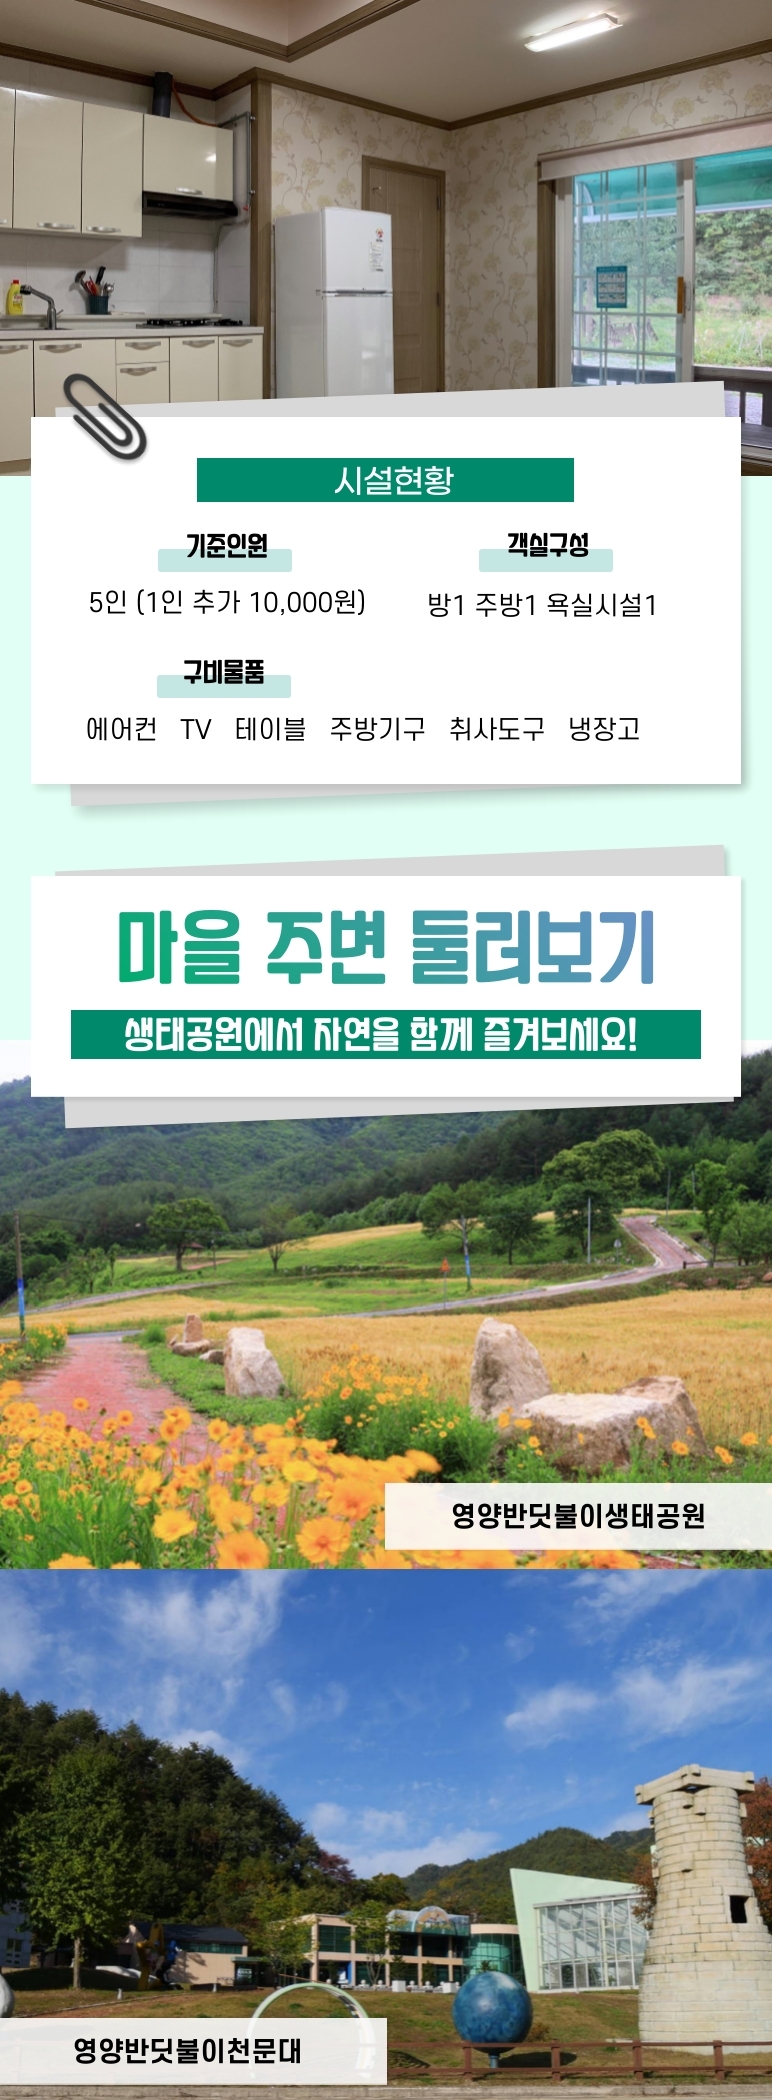 [웰촌]-40개_경북-영양_두메송하마을_-3